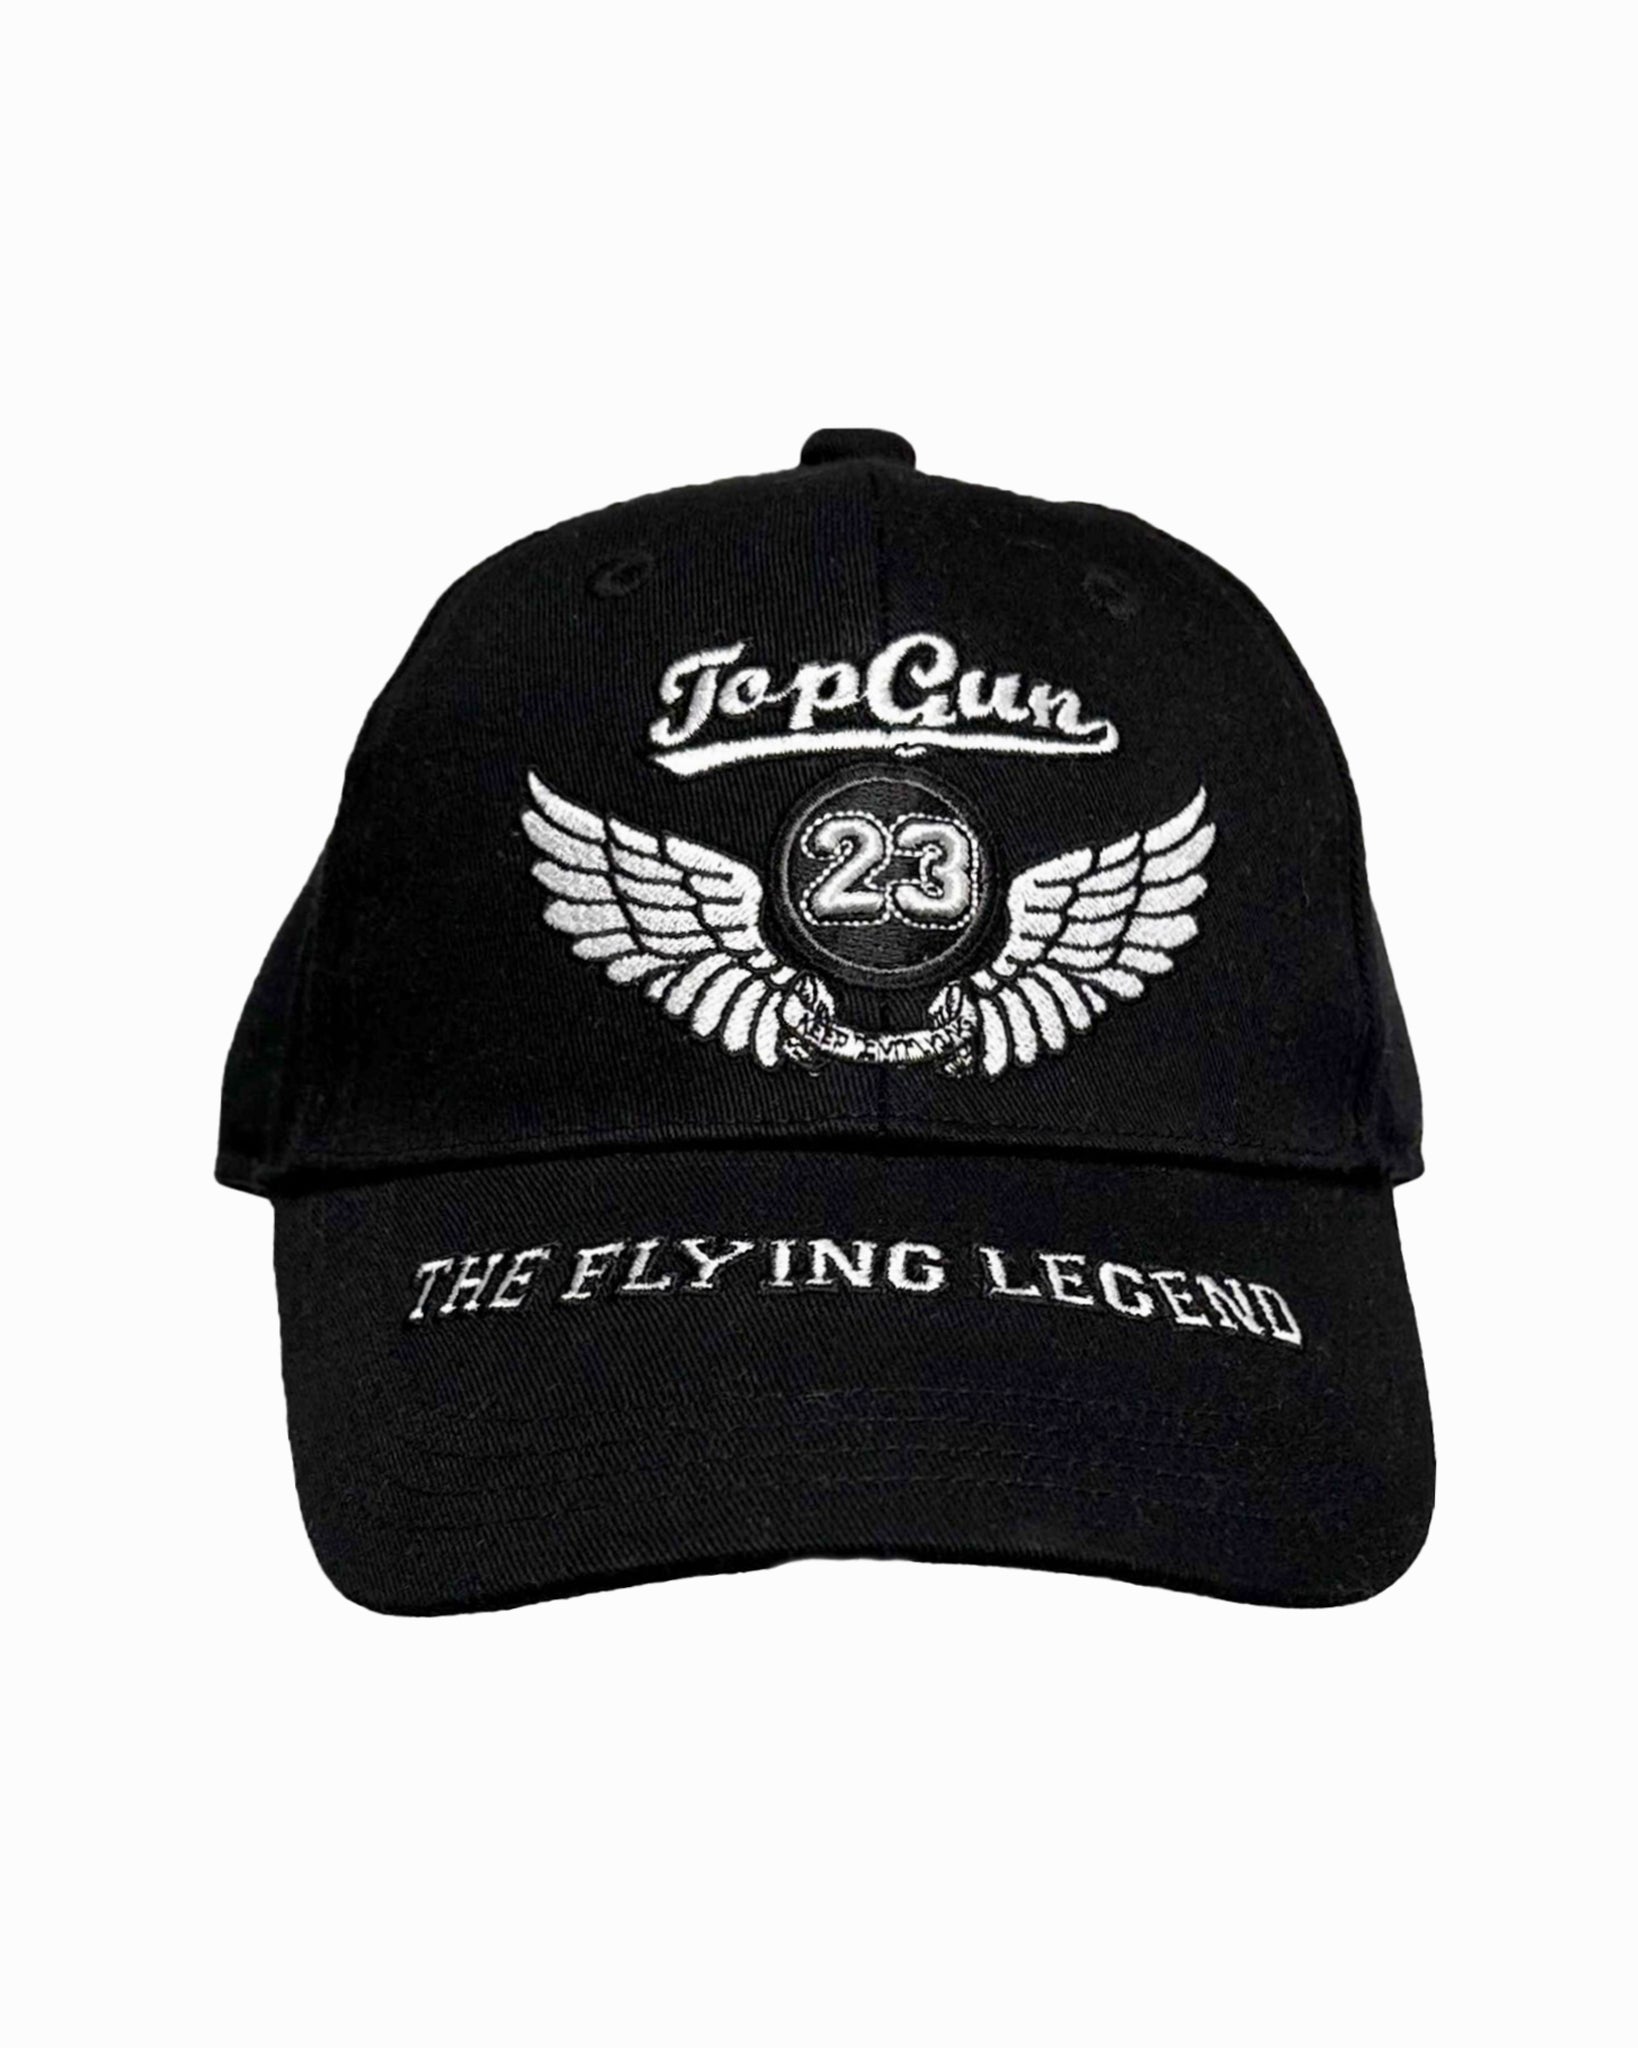 TOP GUN® KIDS' "THE FLYING LEGEND" CAP